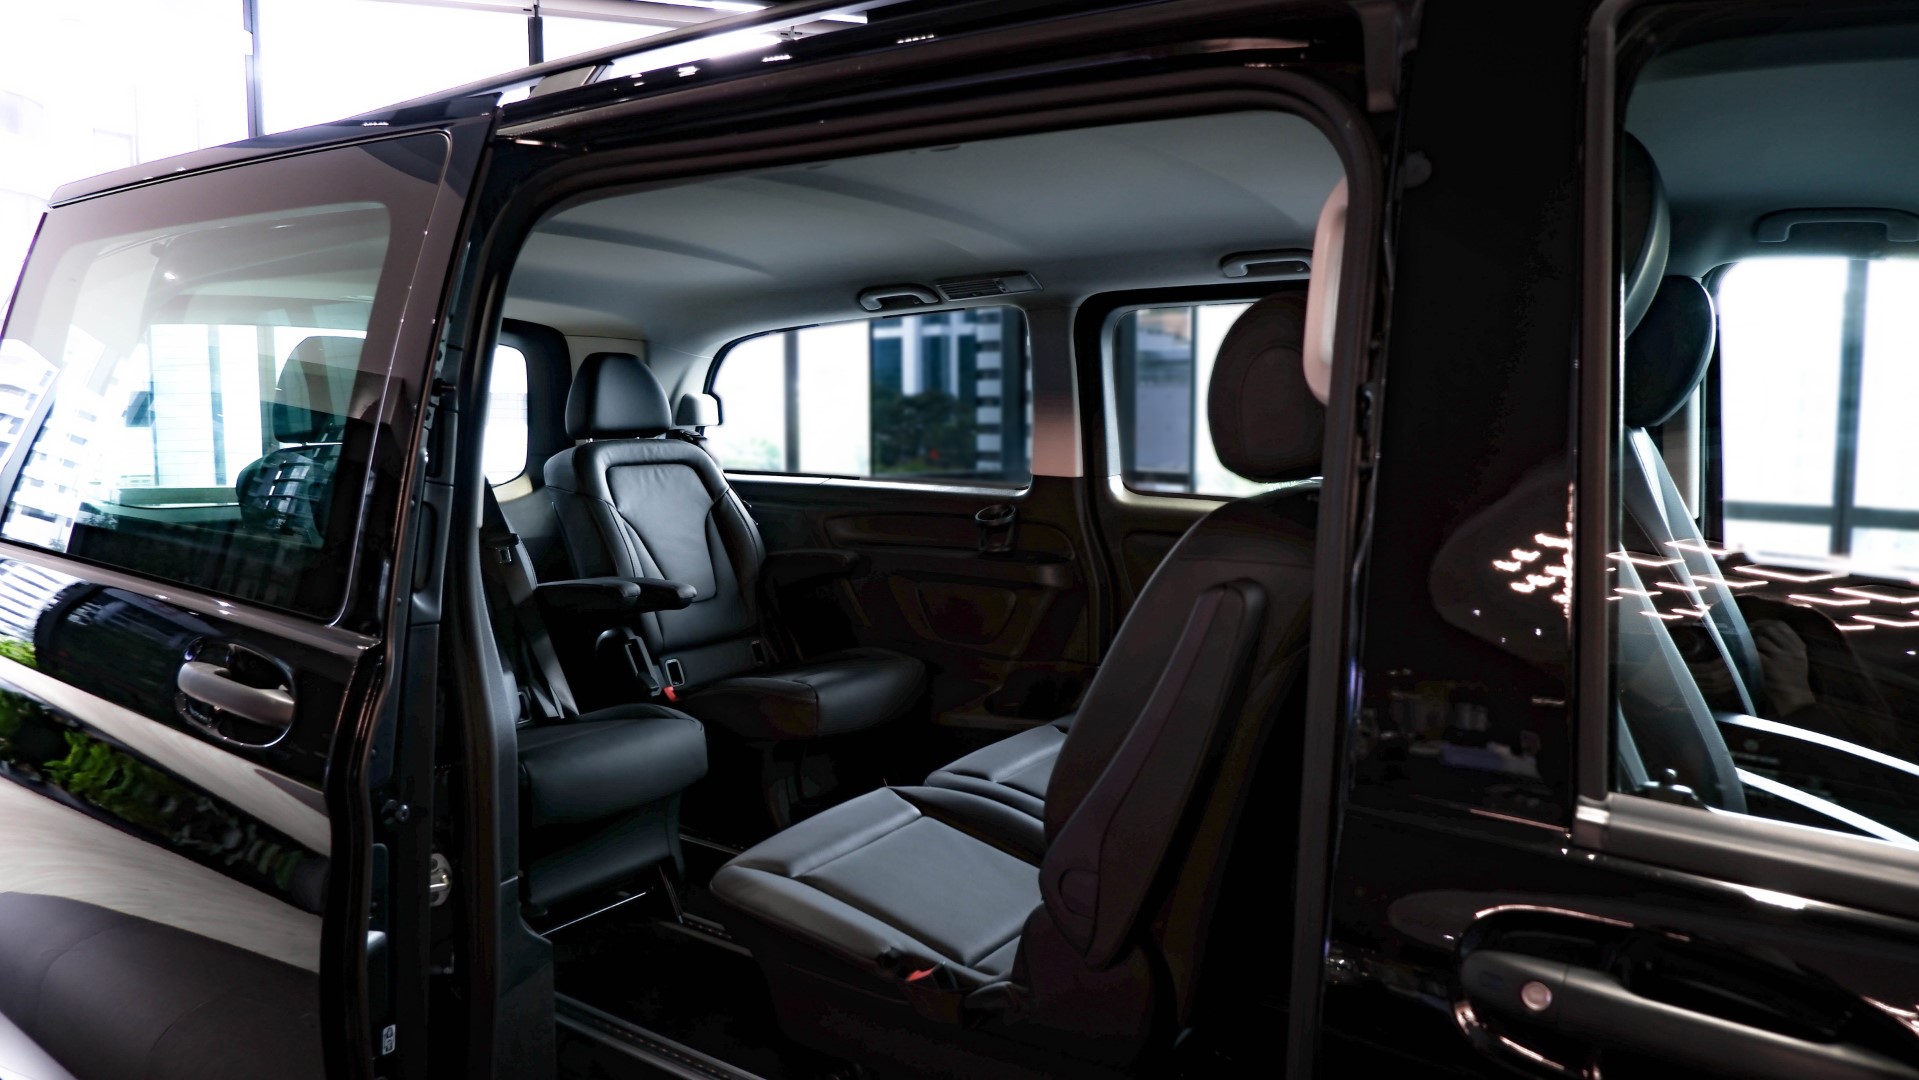 Mercedes-Benz Vito Tourer interior